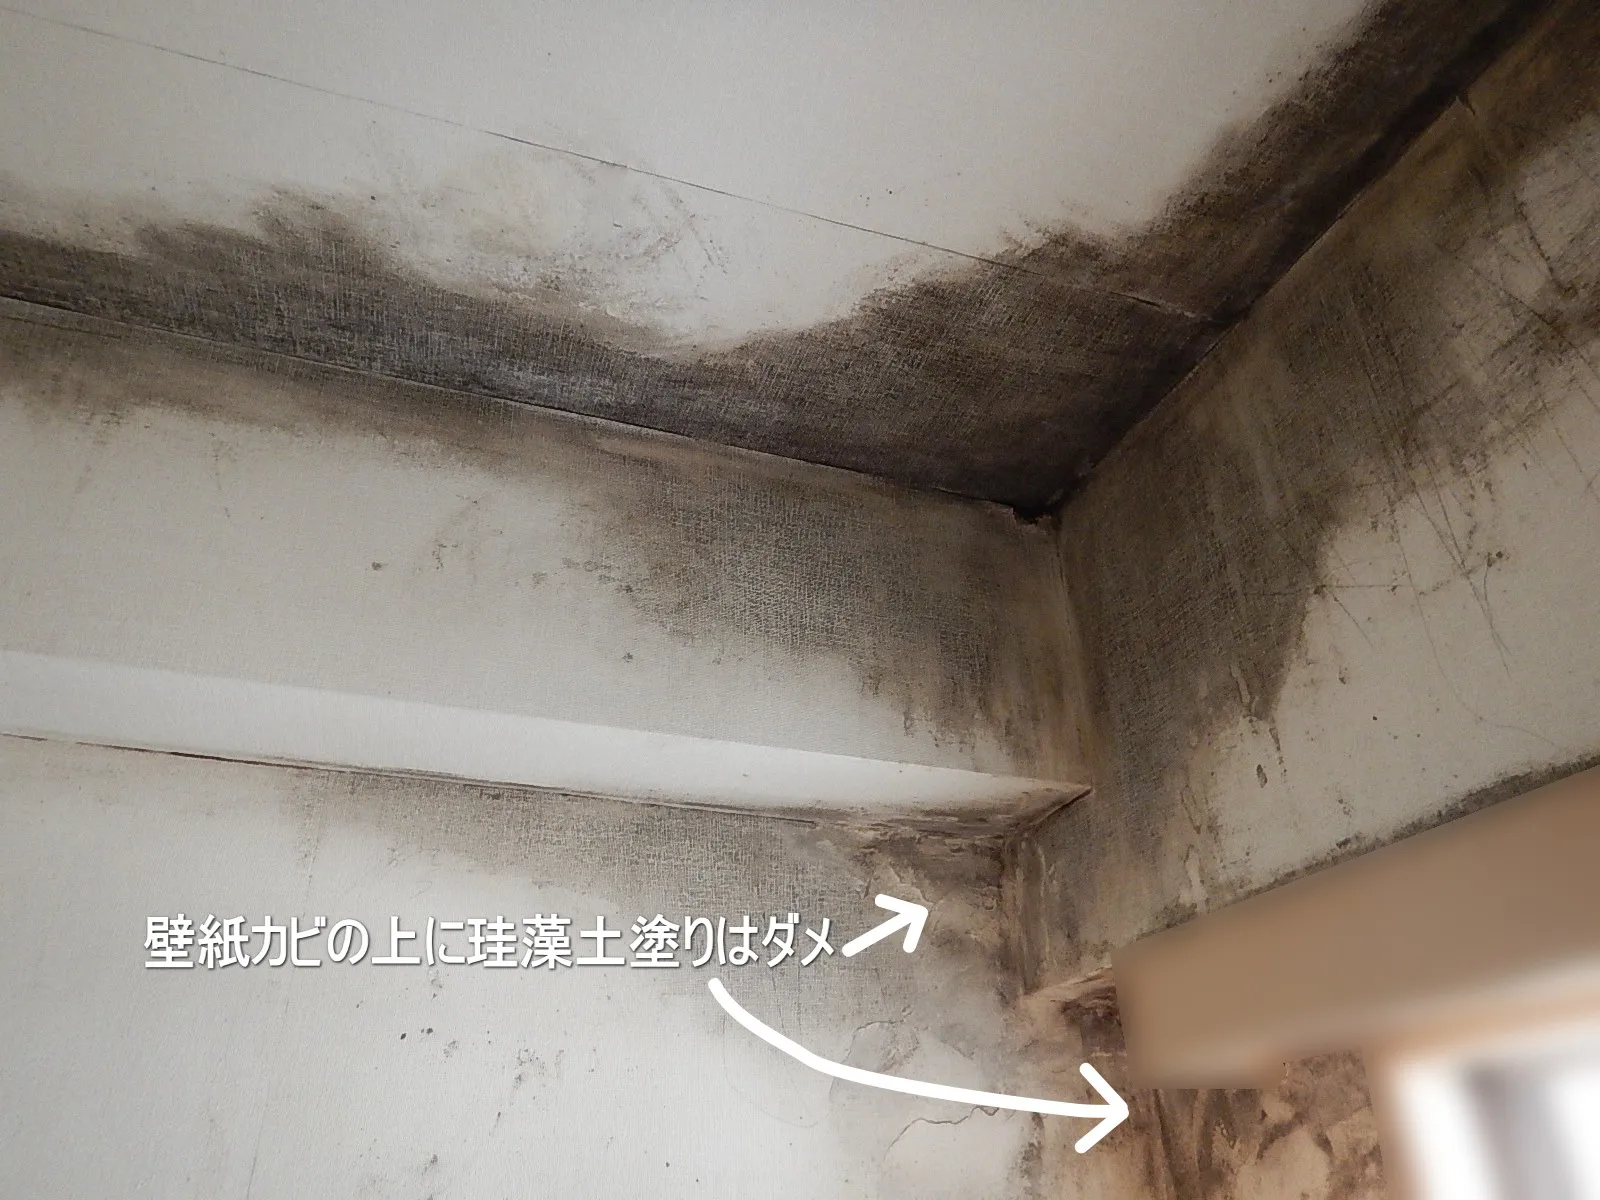 【埼玉・東京】壁紙カビ表面に珪藻土を塗ると健康を害します